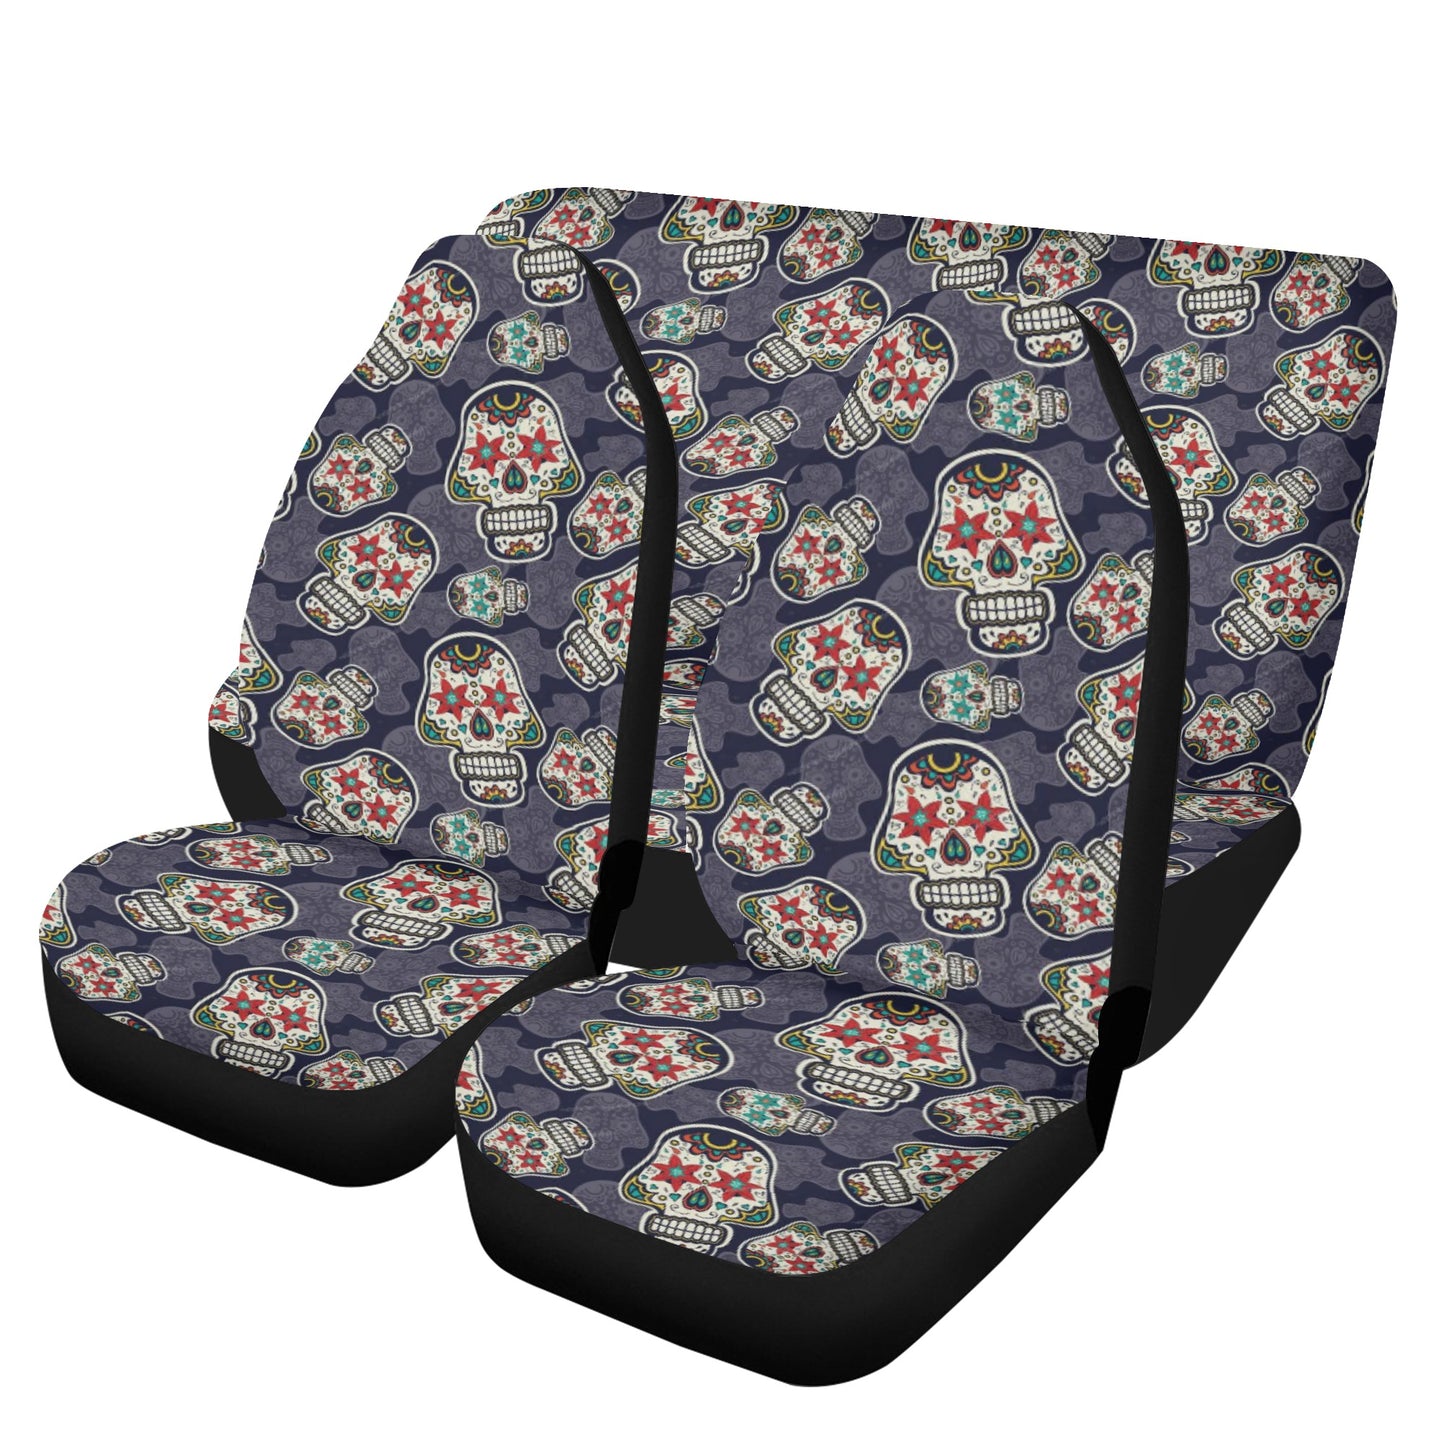 Sugar skull car protector, cinco de mayo skull seat cover for car, sugar skull seat cover for car, floral sugar skull car accessories, sugar